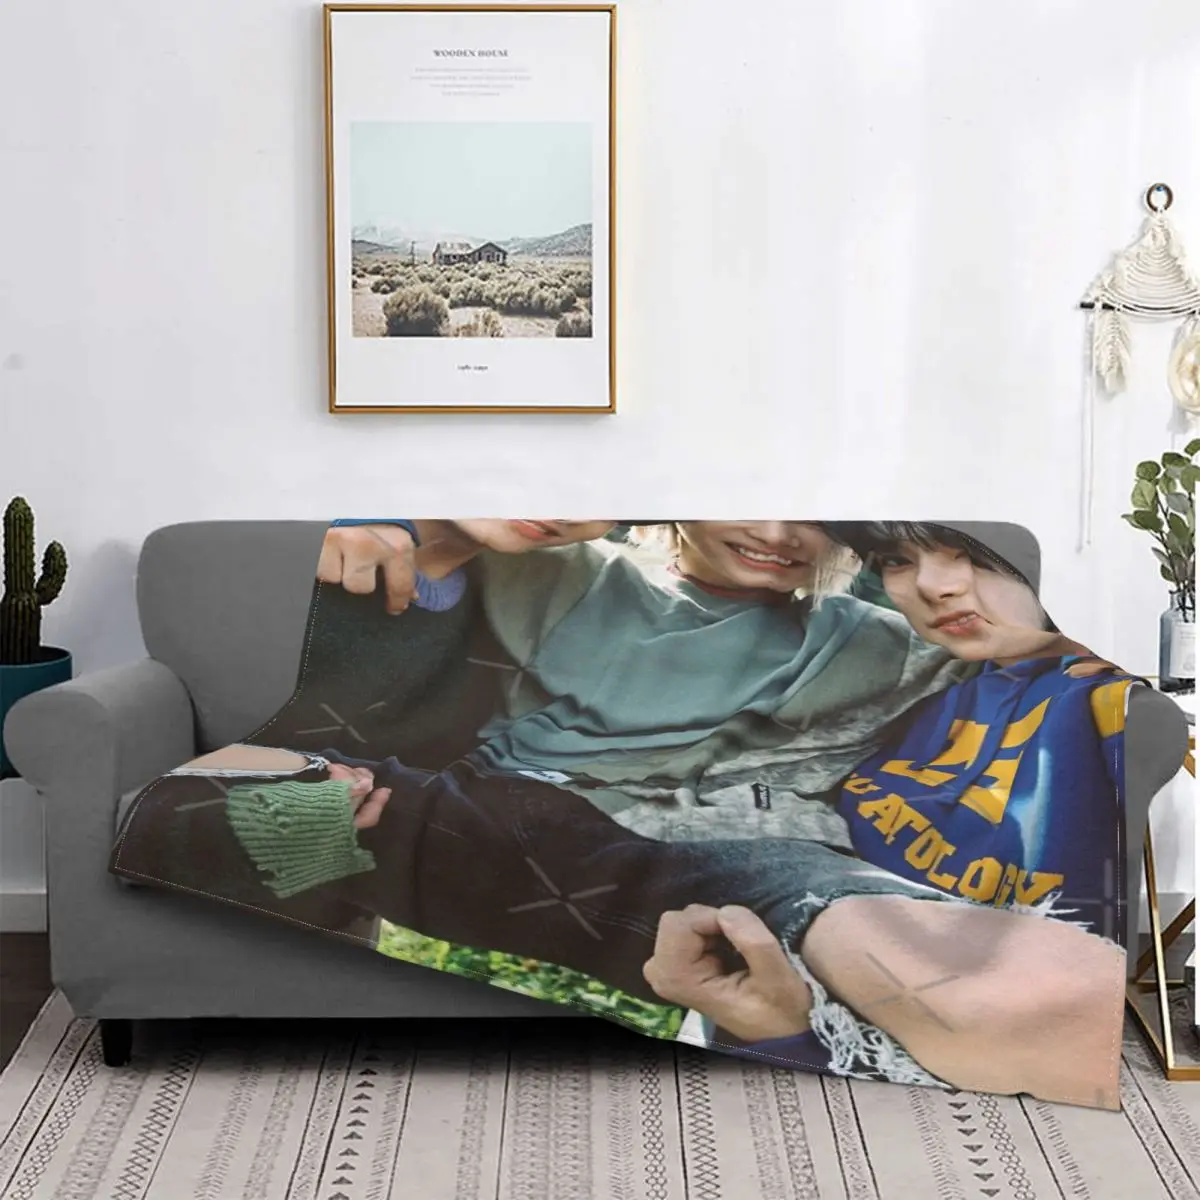 

Enhypen - Group фото-одеяло покрывало для кровати Плед покрывало аниме плюшевое одеяло Толстовка пляжное полотенце роскошное